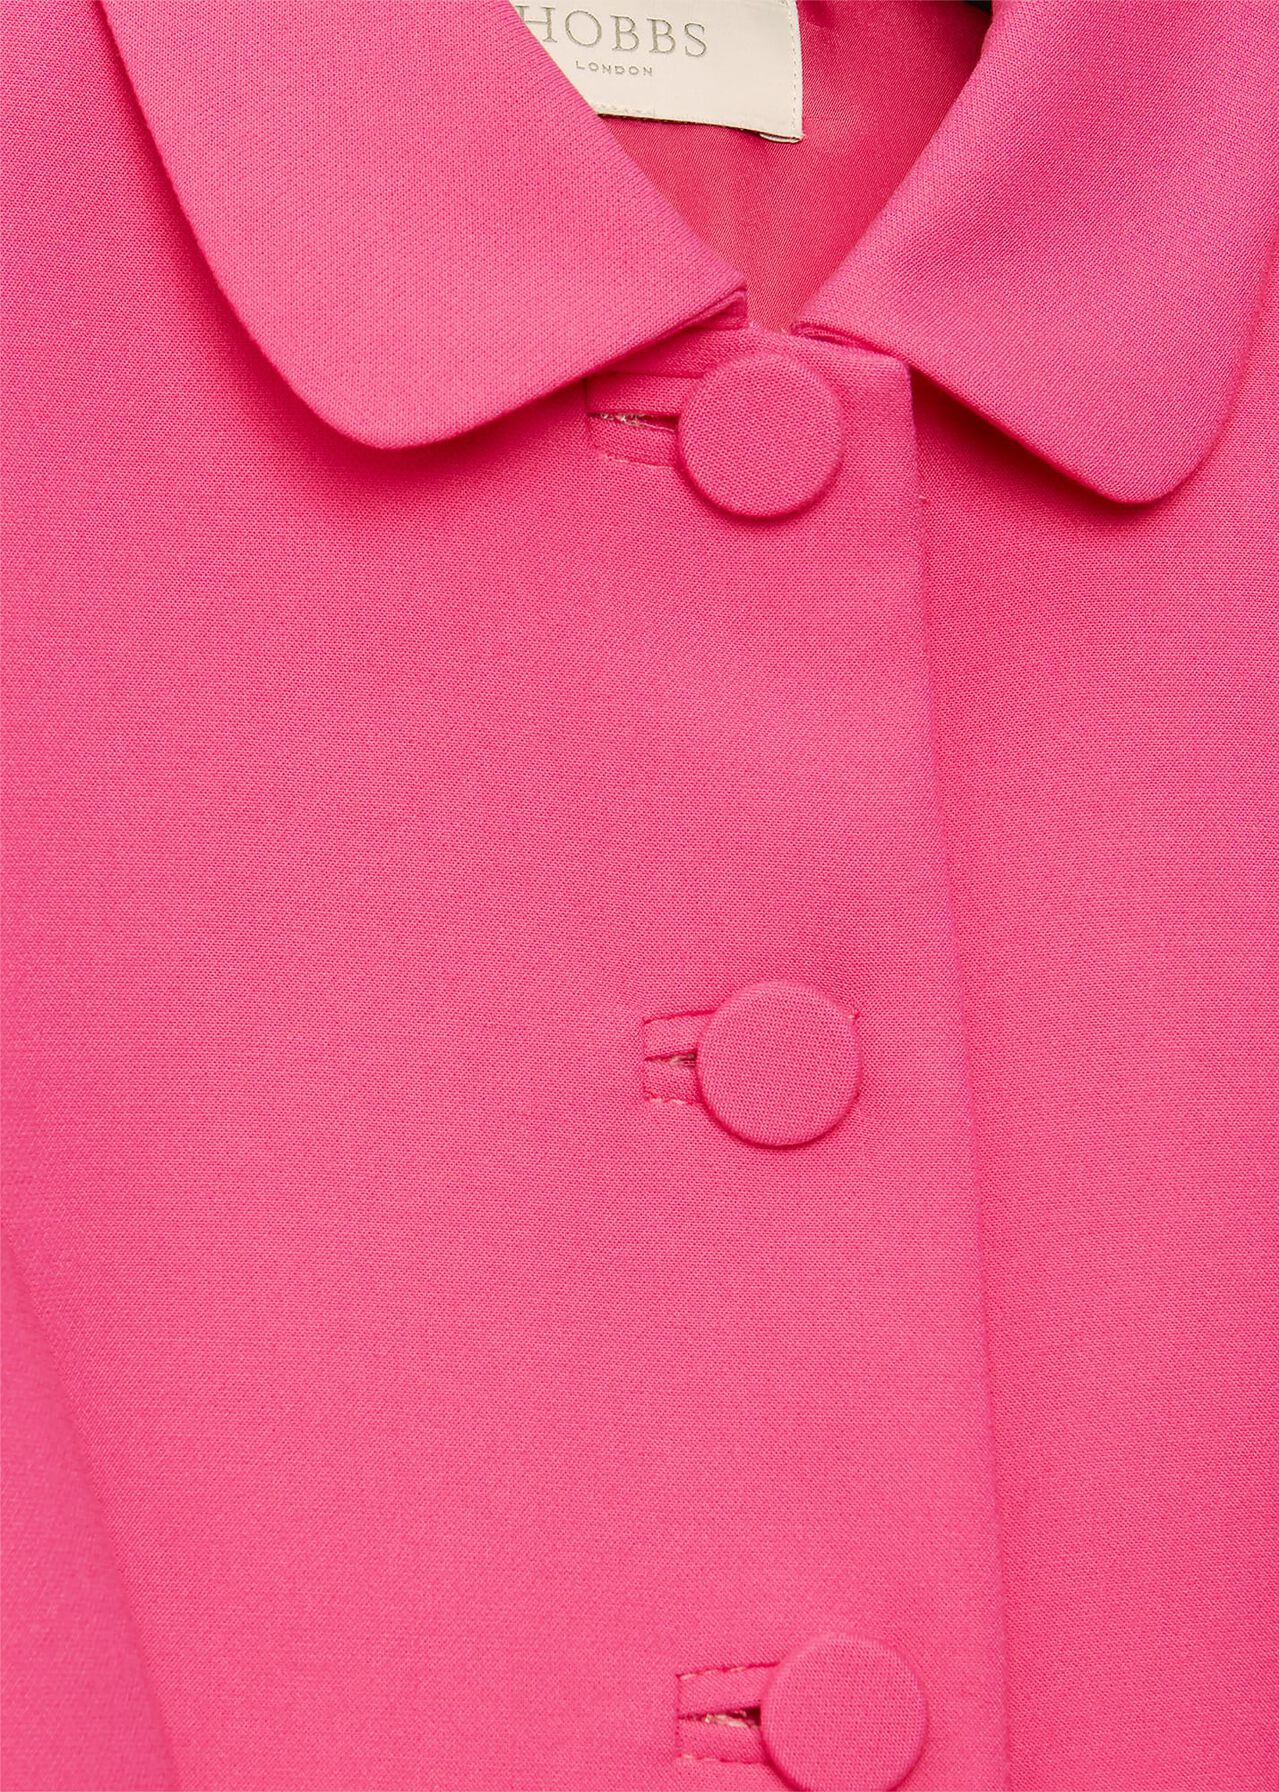 Dania Jacket, Bright Pink, hi-res